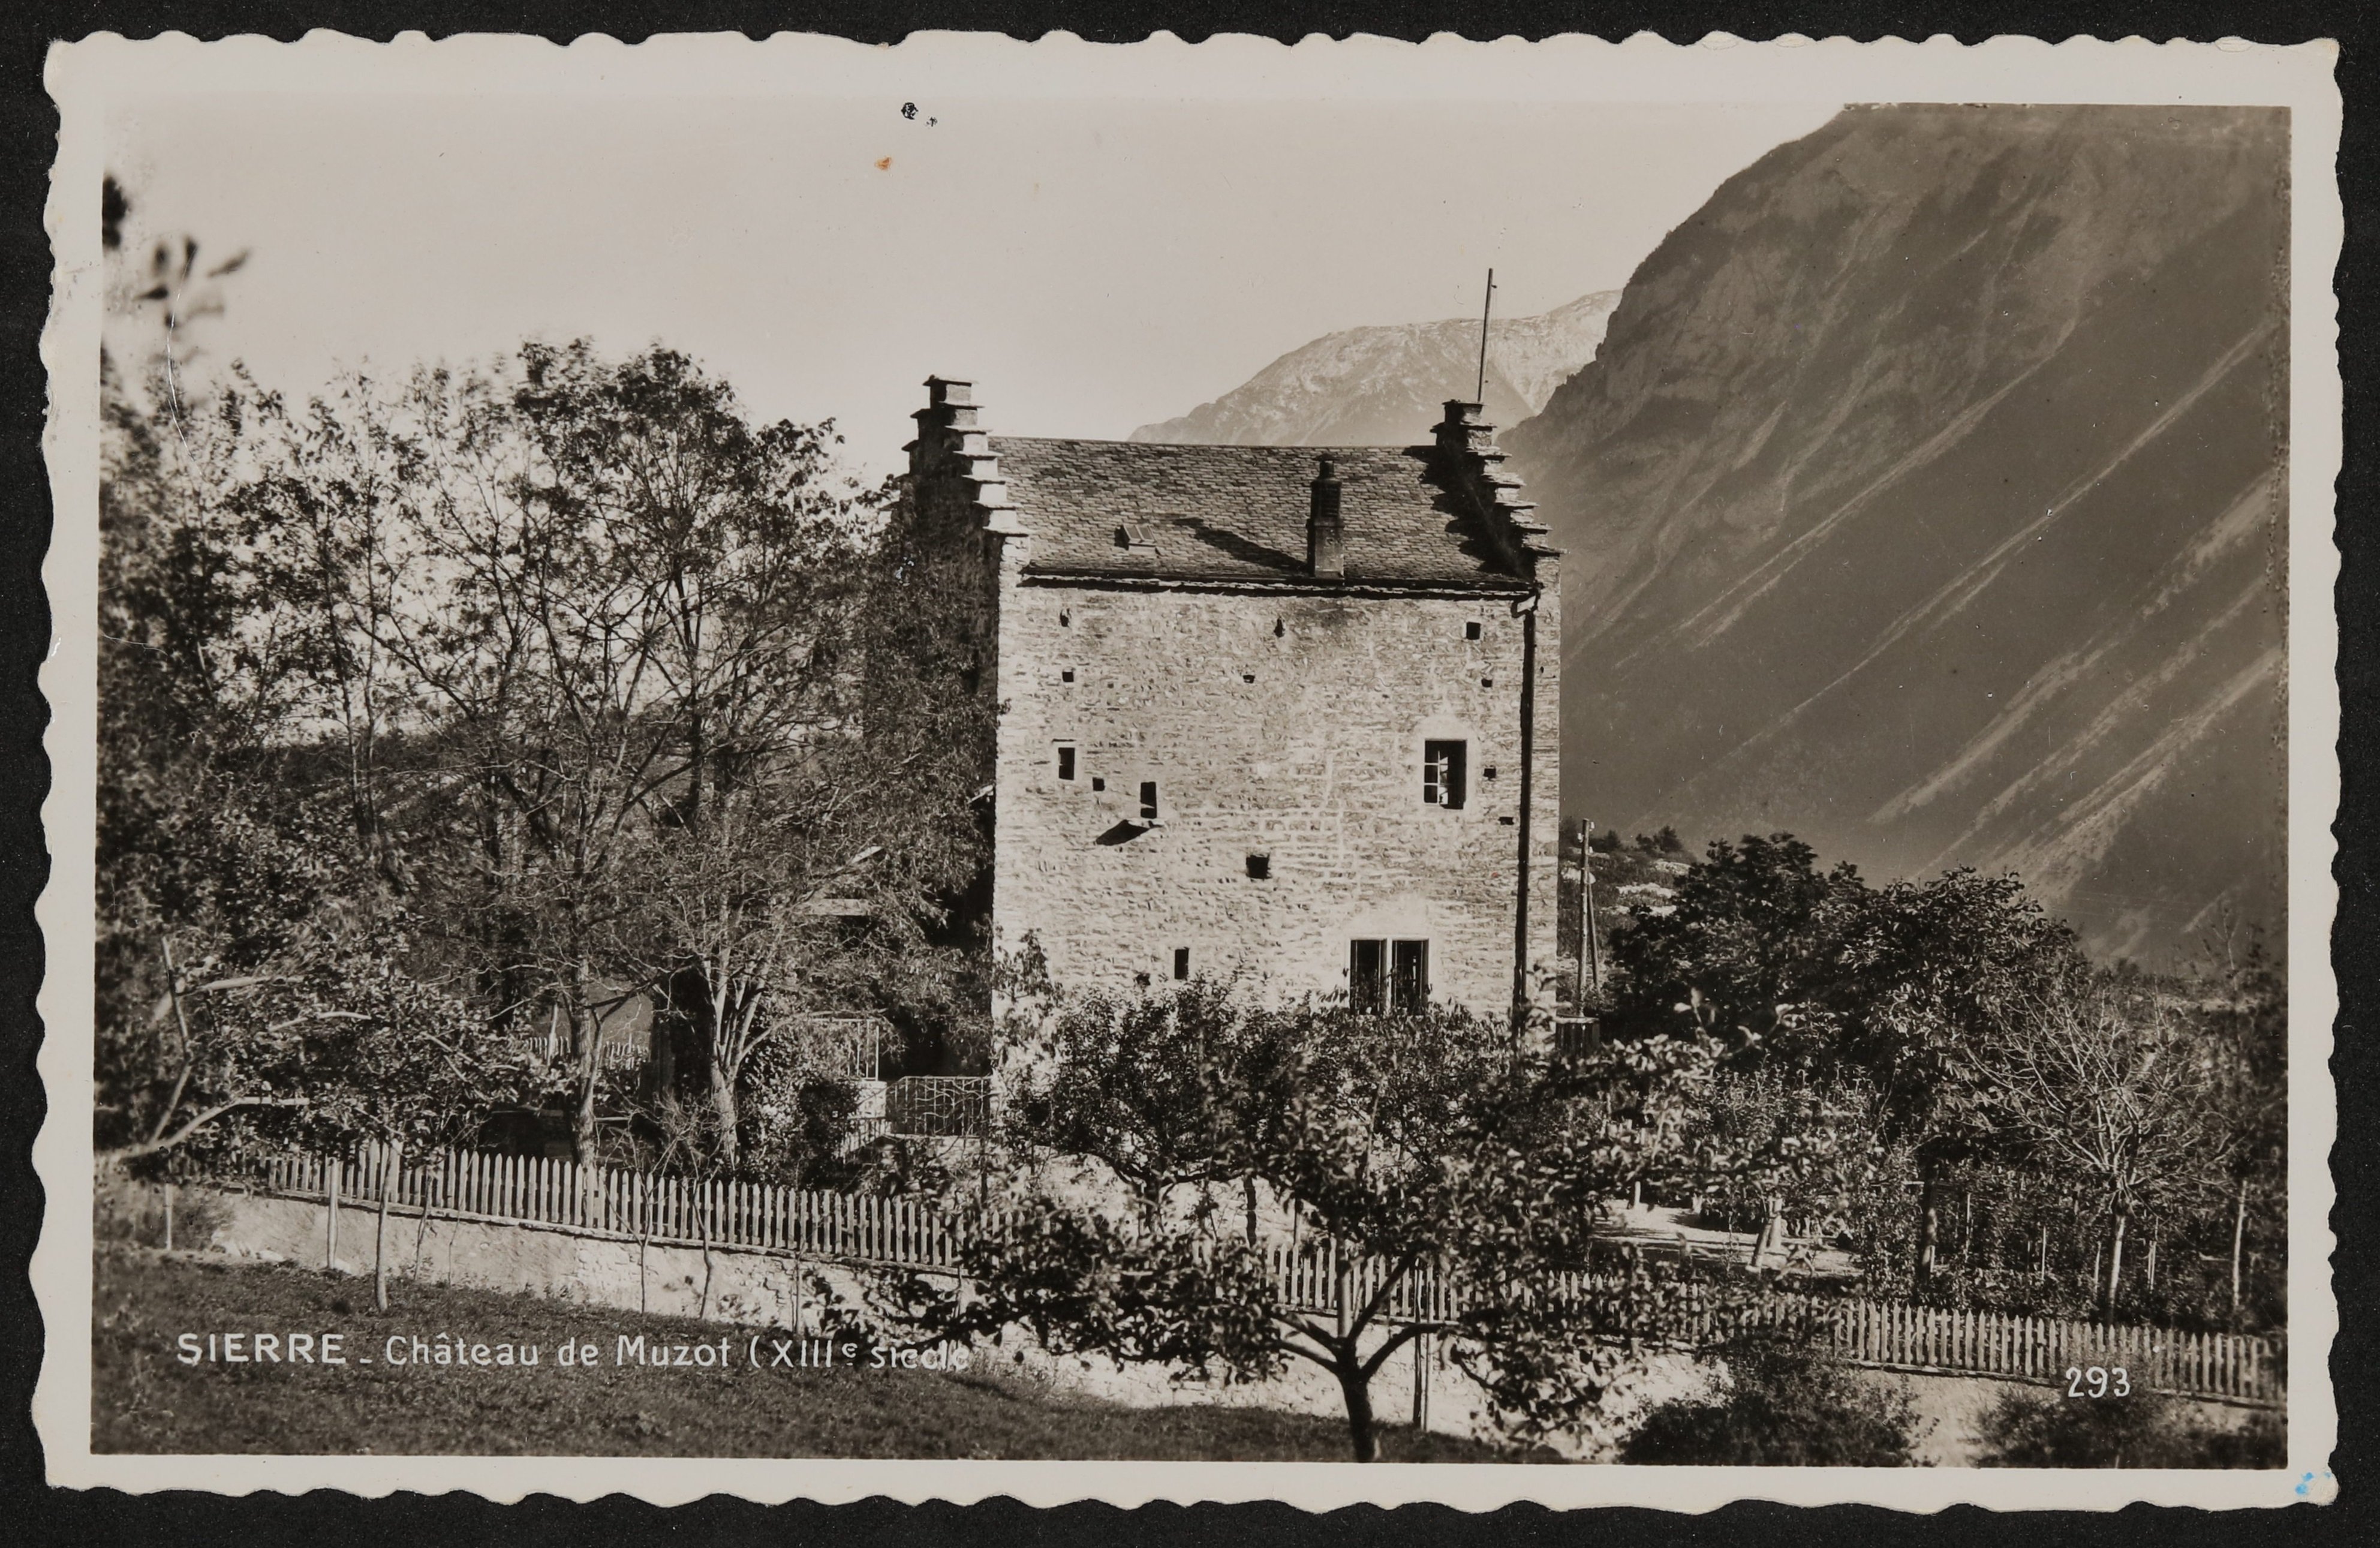 Ansichtskarte vom Château de Muzot in Sierre, mit Postkartentext von Rudolf Kassner an Gerty von Hofmannsthal (1956) (Freies Deutsches Hochstift / Frankfurter Goethe-Museum CC BY-NC-SA)